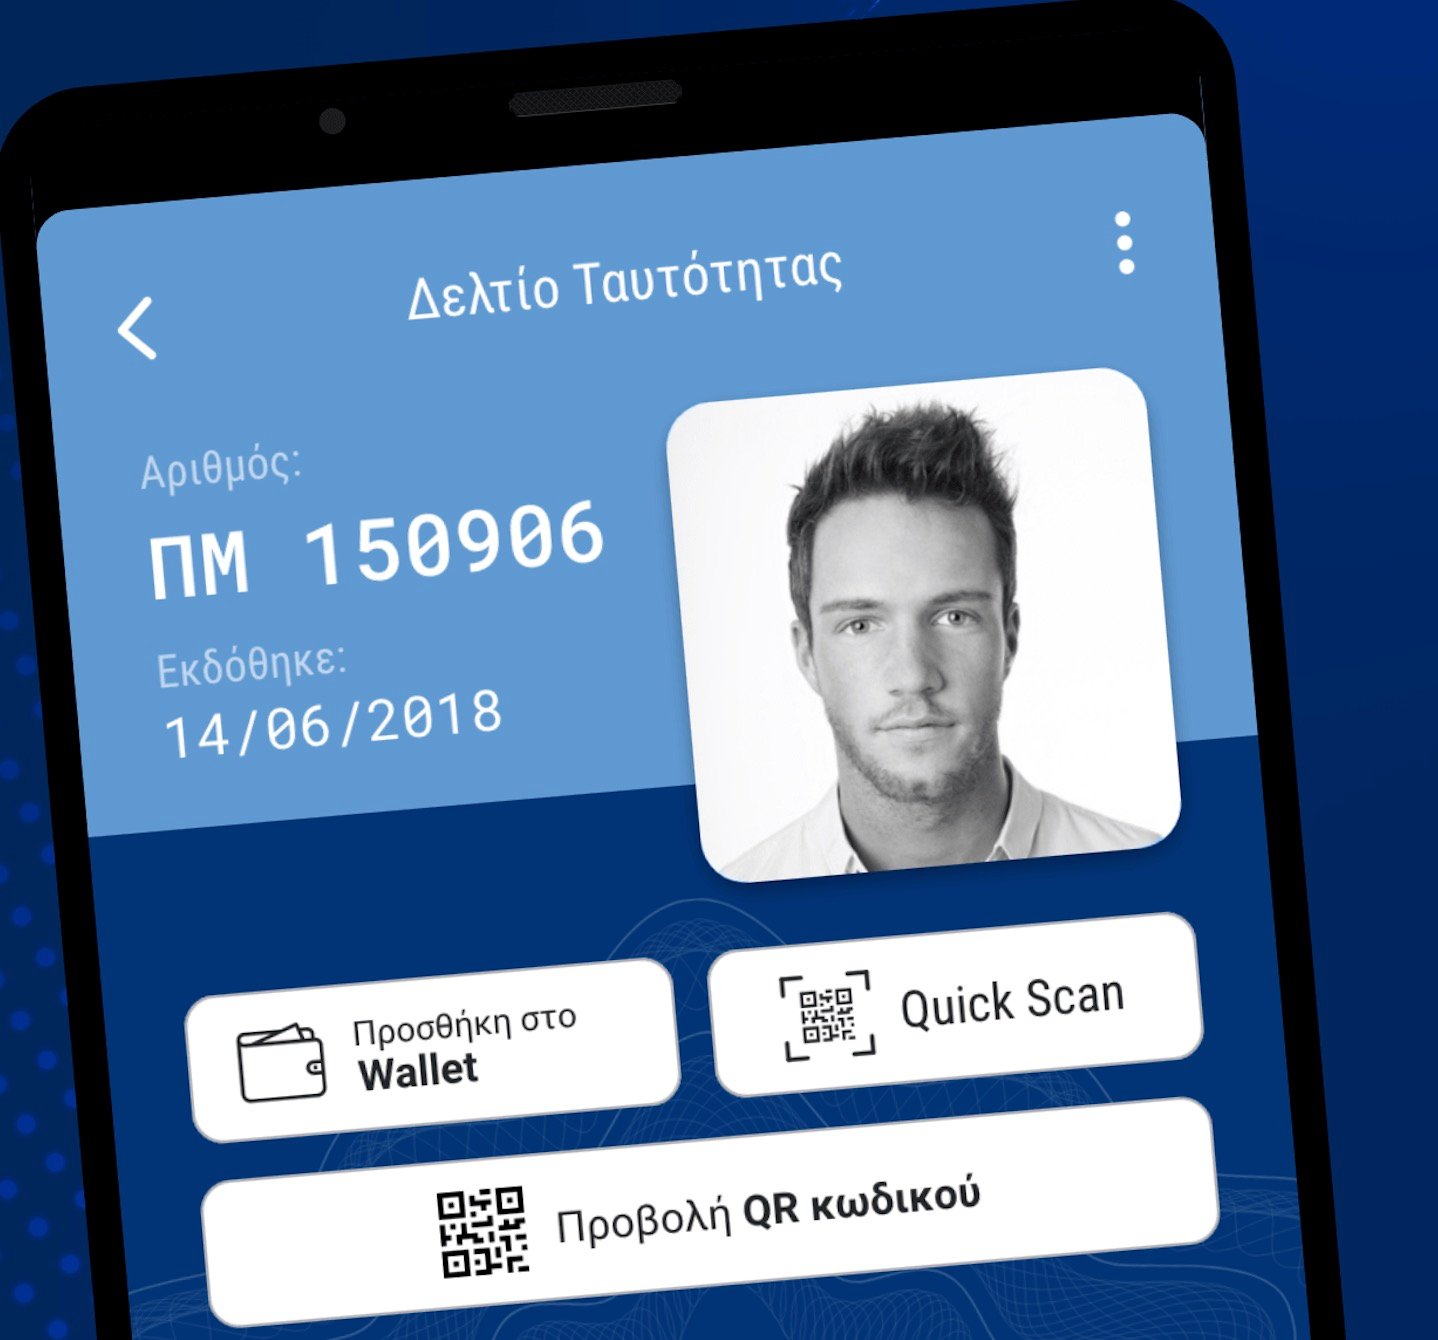 Διαθέσιμο το gov.gr Wallet για ταυτότητα και άδεια οδήγησης στο smartphone [Ενημέρωση] – Gov.gr